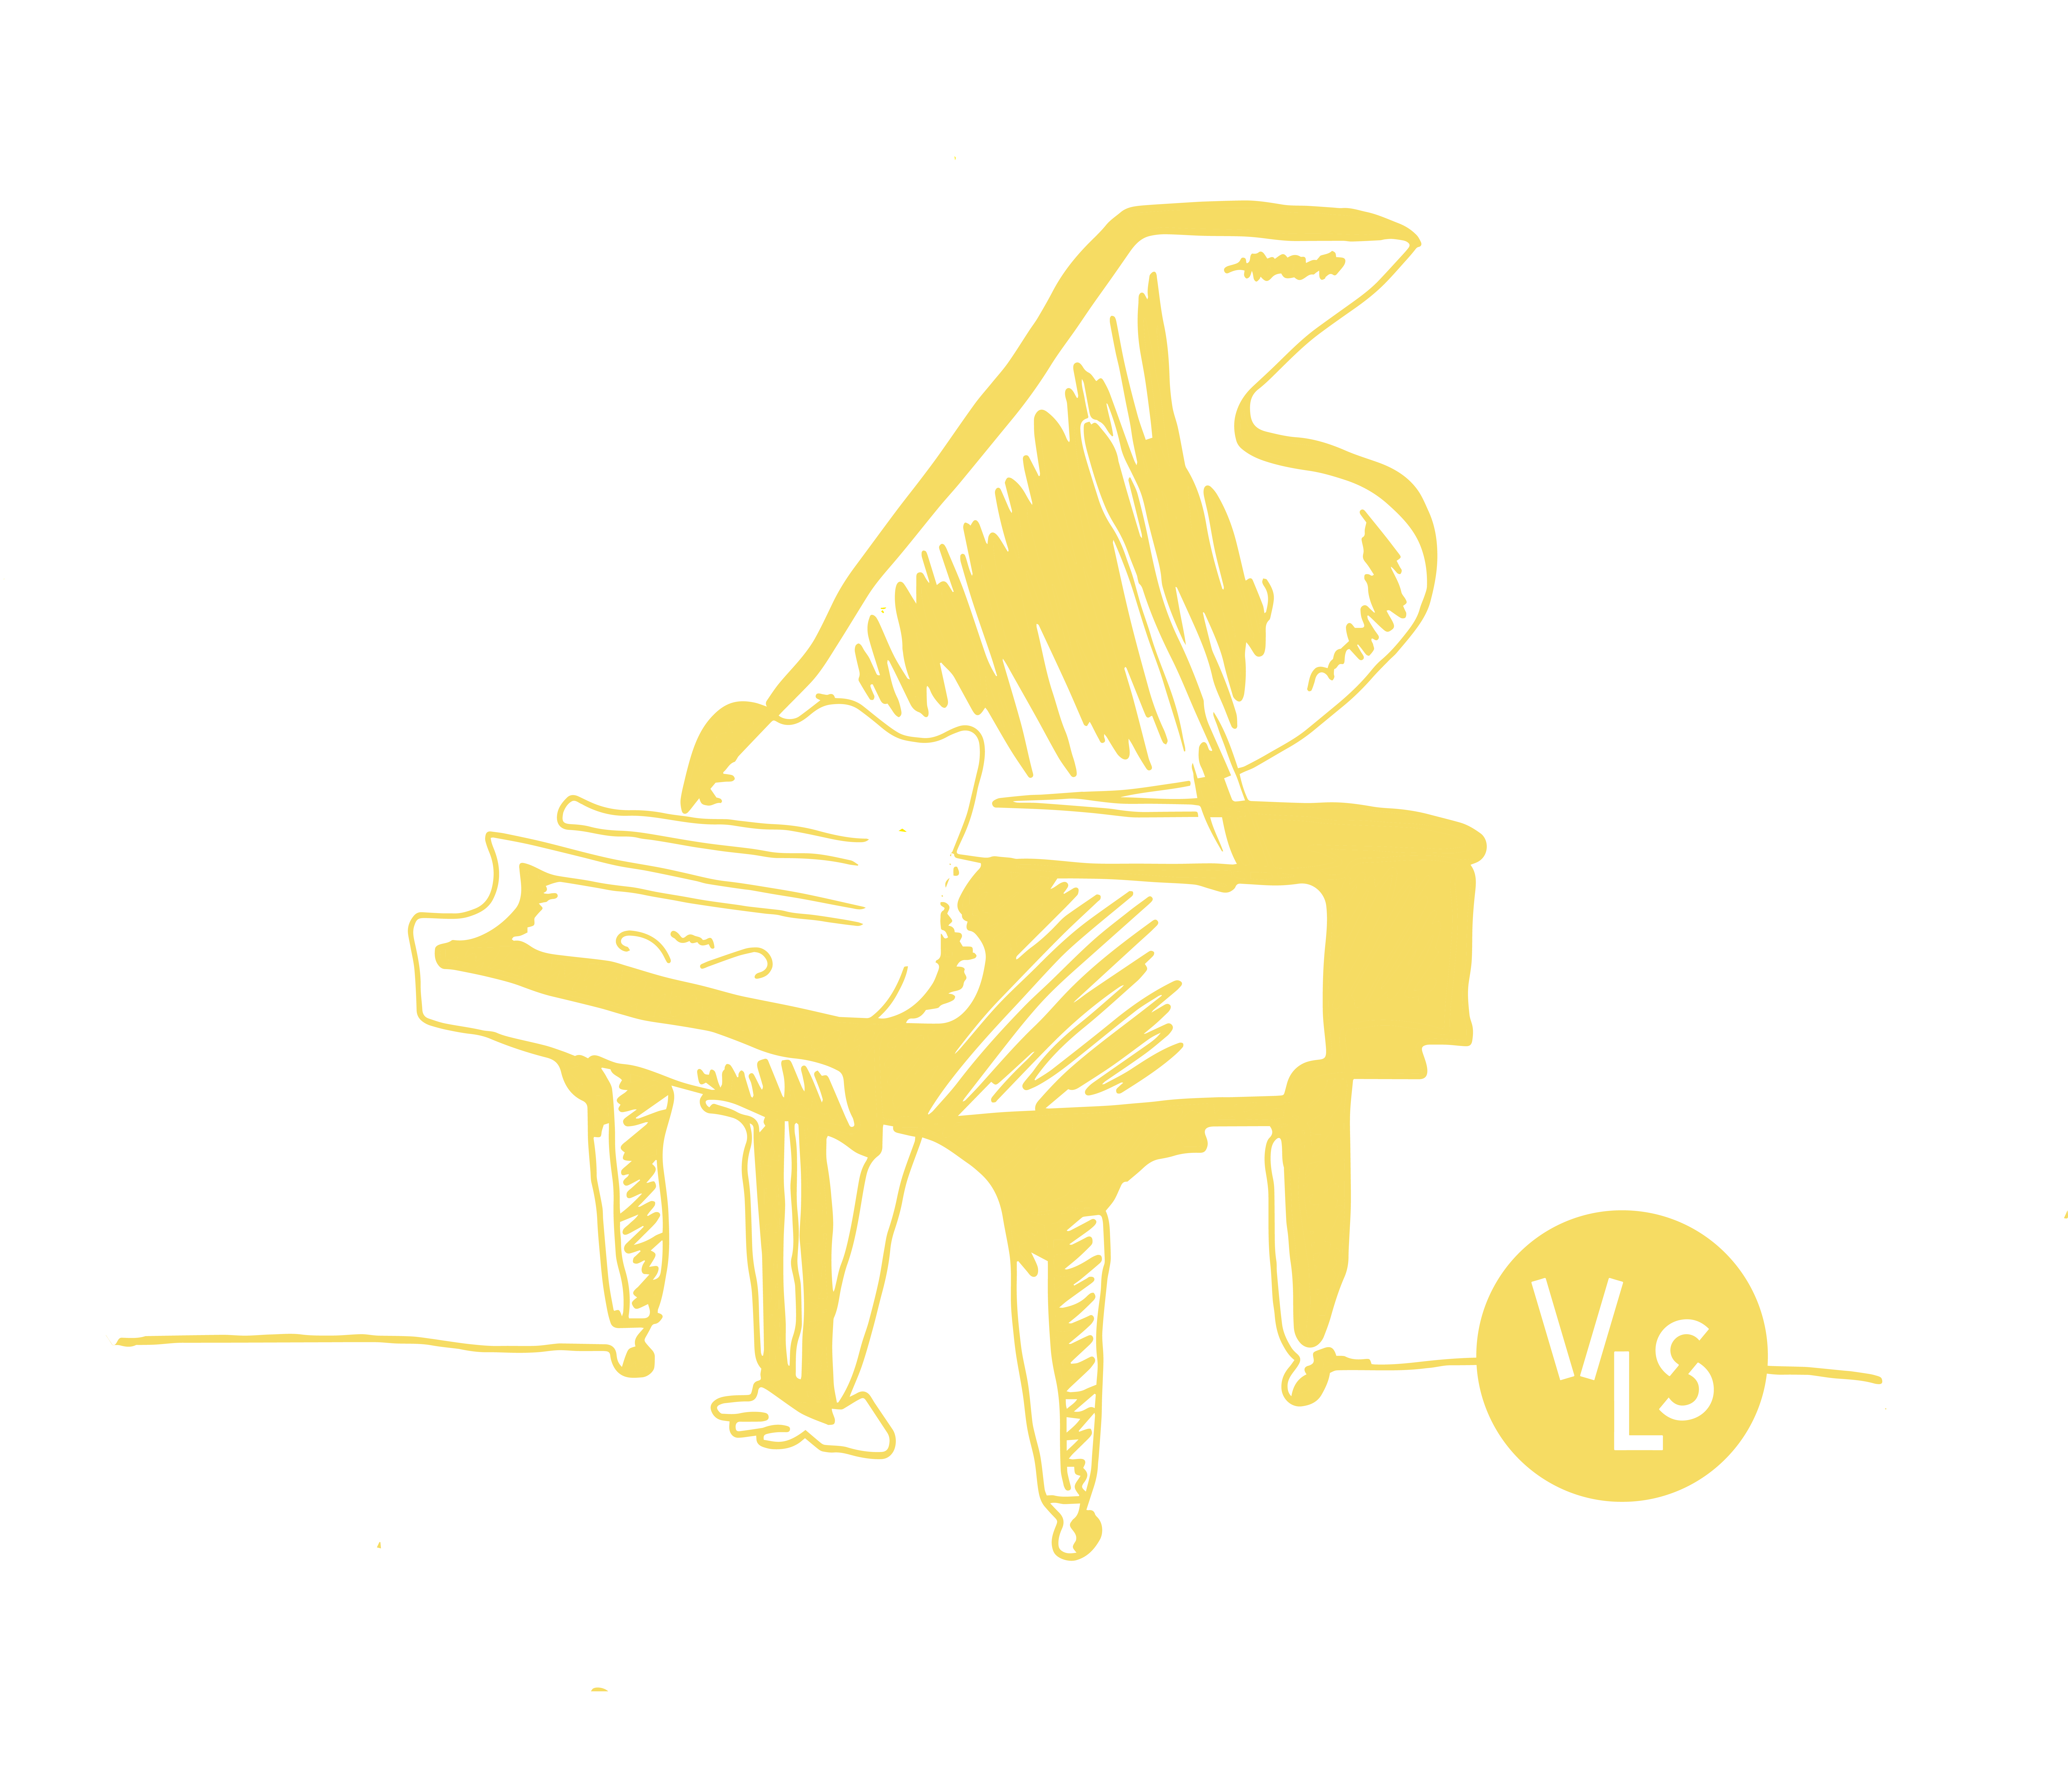 Illustratie van een gele piano met het VLS-logo